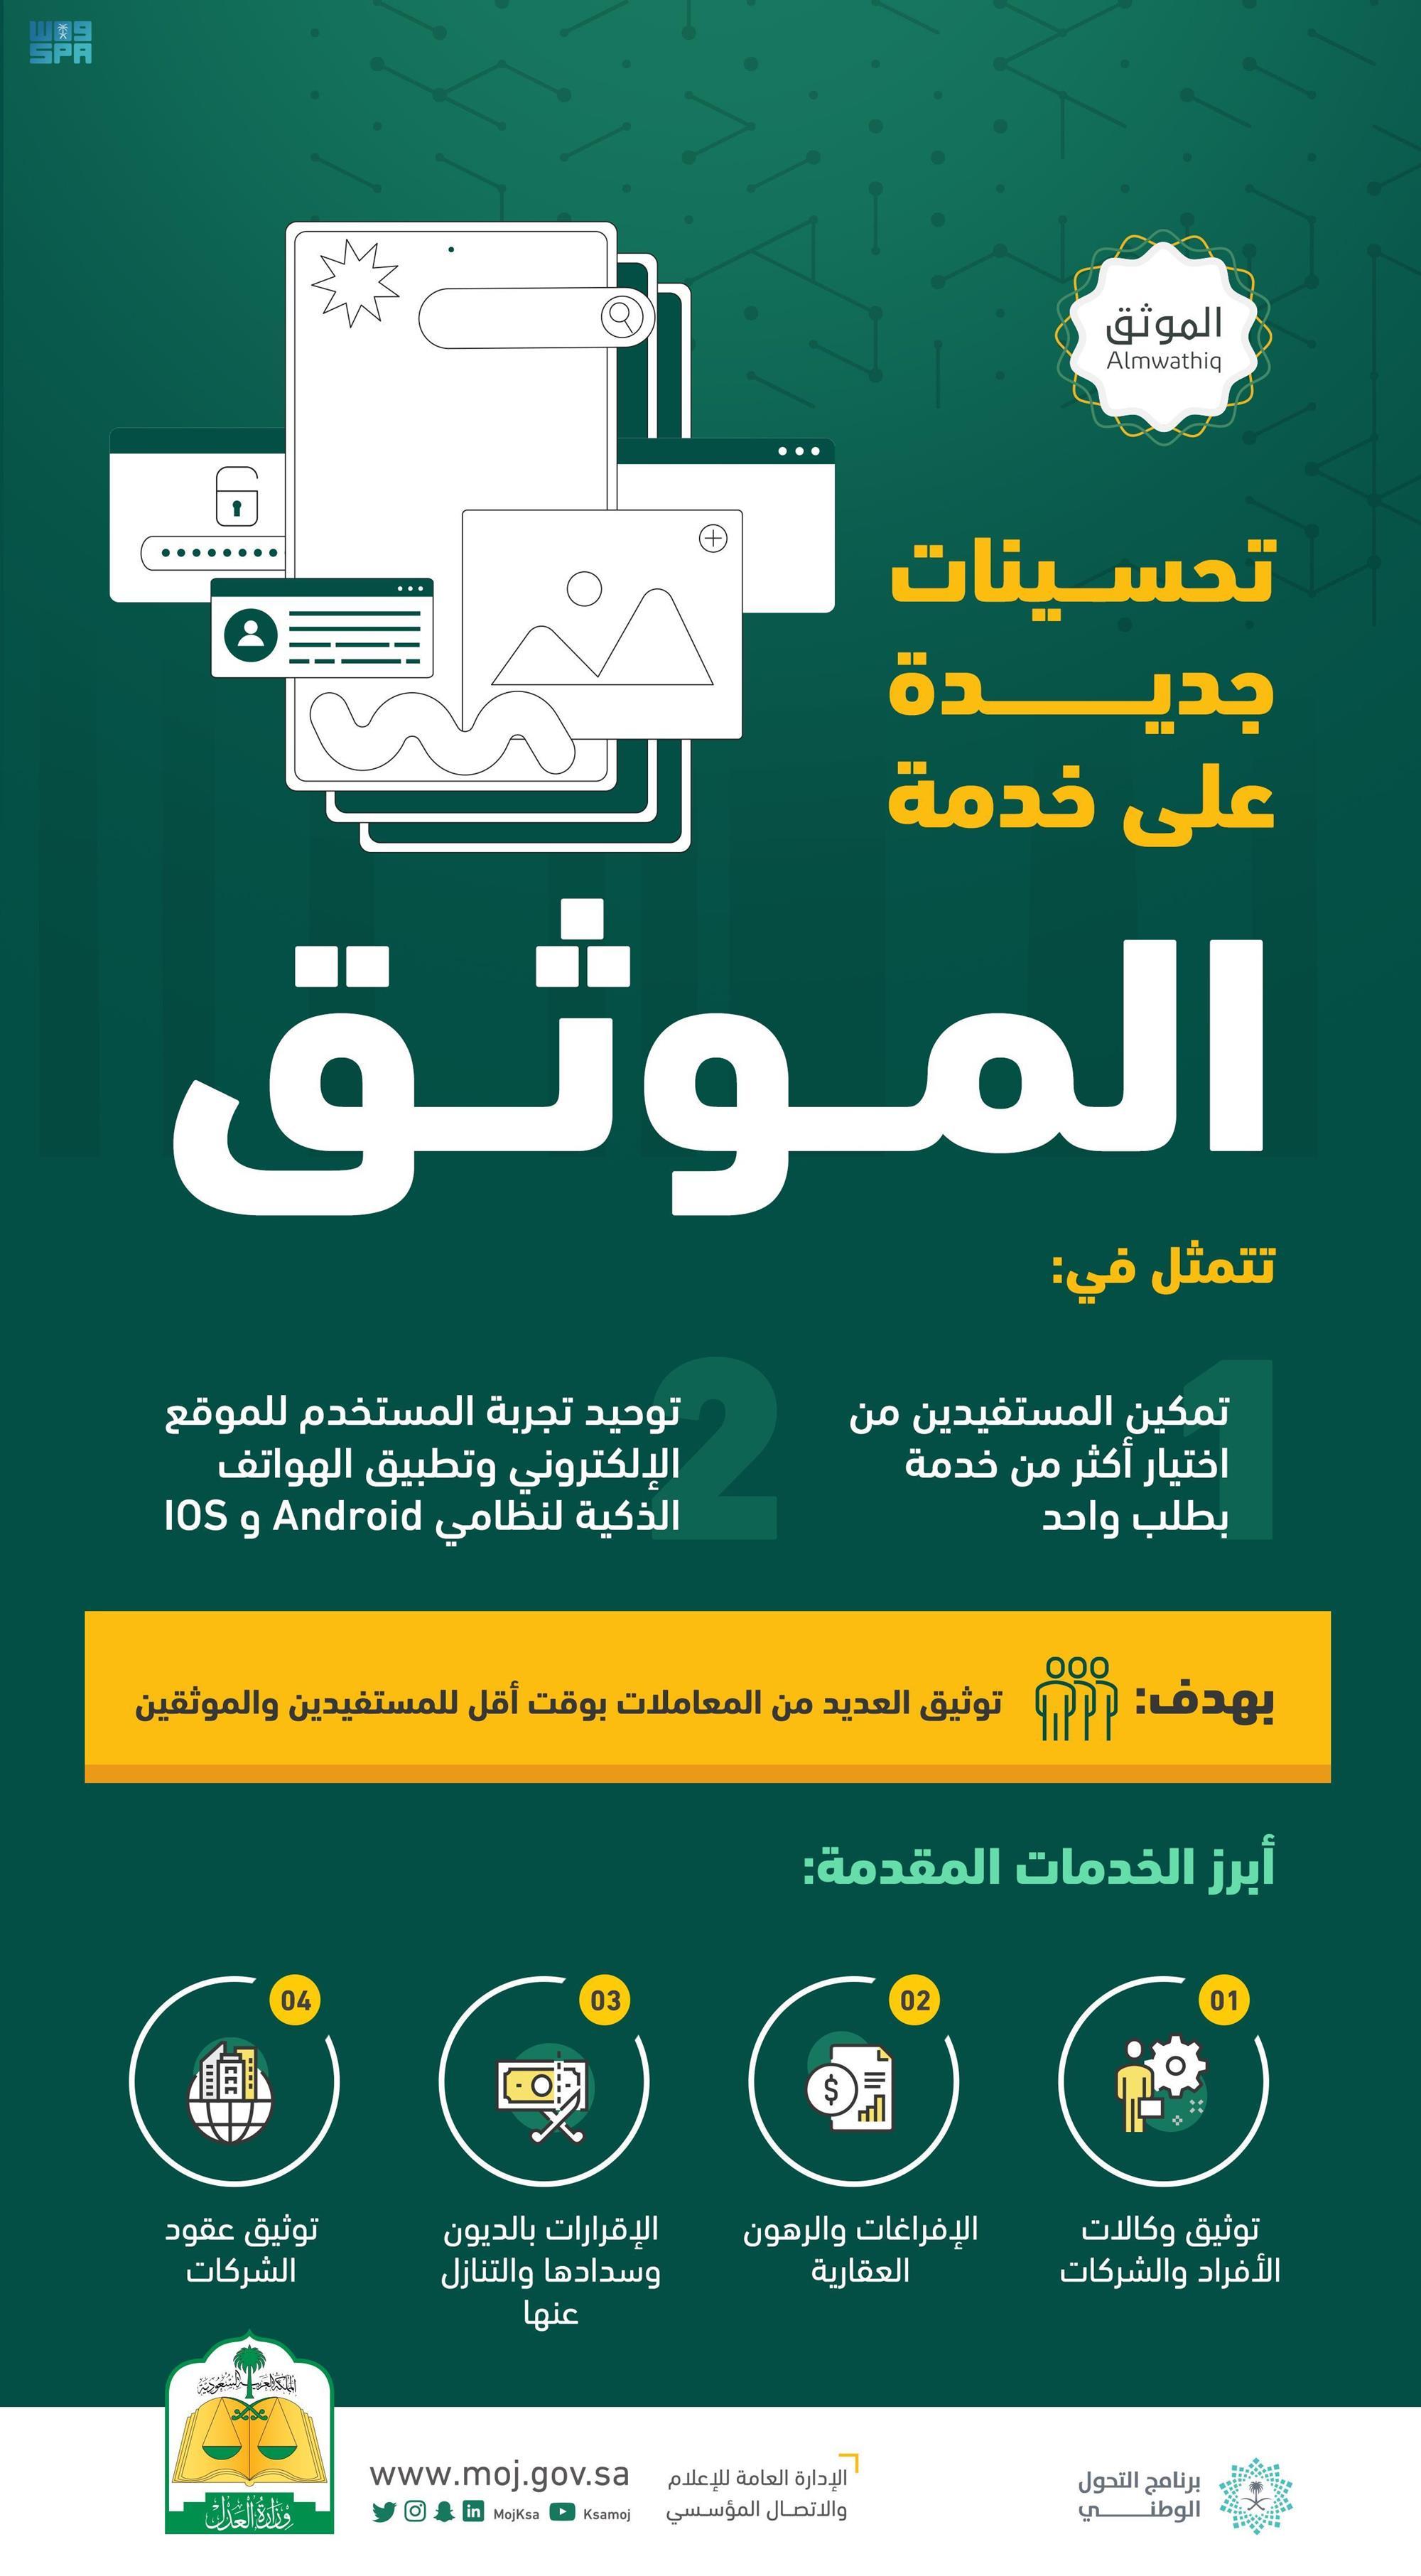 موثق مرخص من وزارة العدل في الرياض - خطوات الحصول على موثق مرخص من وزارة العدل في الرياض